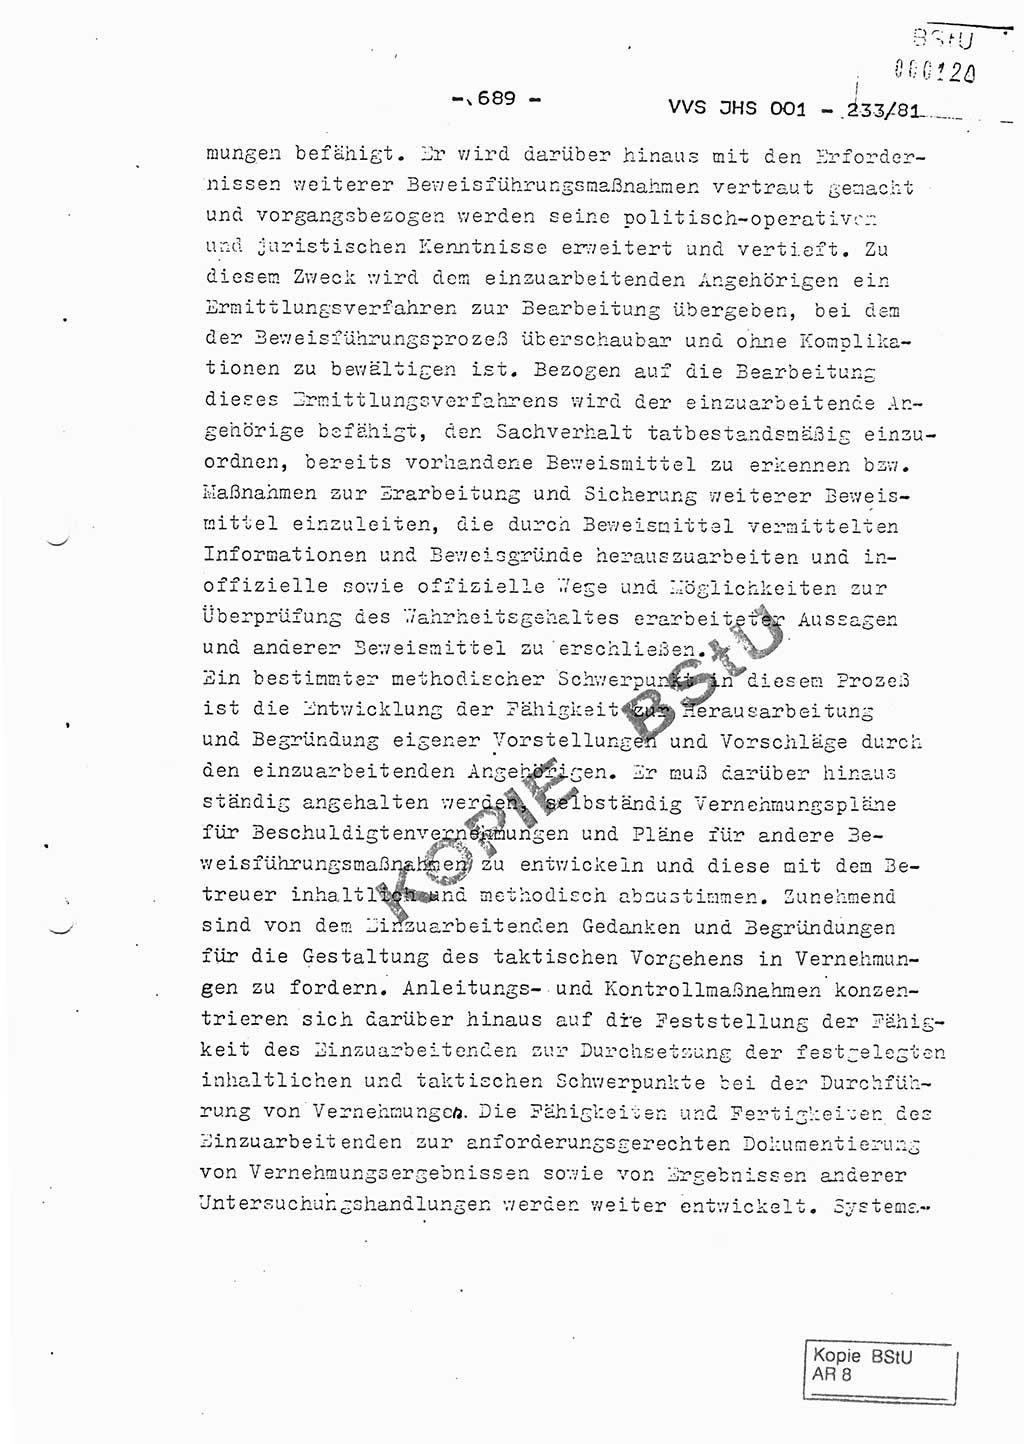 Dissertation Oberstleutnant Horst Zank (JHS), Oberstleutnant Dr. Karl-Heinz Knoblauch (JHS), Oberstleutnant Gustav-Adolf Kowalewski (HA Ⅸ), Oberstleutnant Wolfgang Plötner (HA Ⅸ), Ministerium für Staatssicherheit (MfS) [Deutsche Demokratische Republik (DDR)], Juristische Hochschule (JHS), Vertrauliche Verschlußsache (VVS) o001-233/81, Potsdam 1981, Blatt 689 (Diss. MfS DDR JHS VVS o001-233/81 1981, Bl. 689)